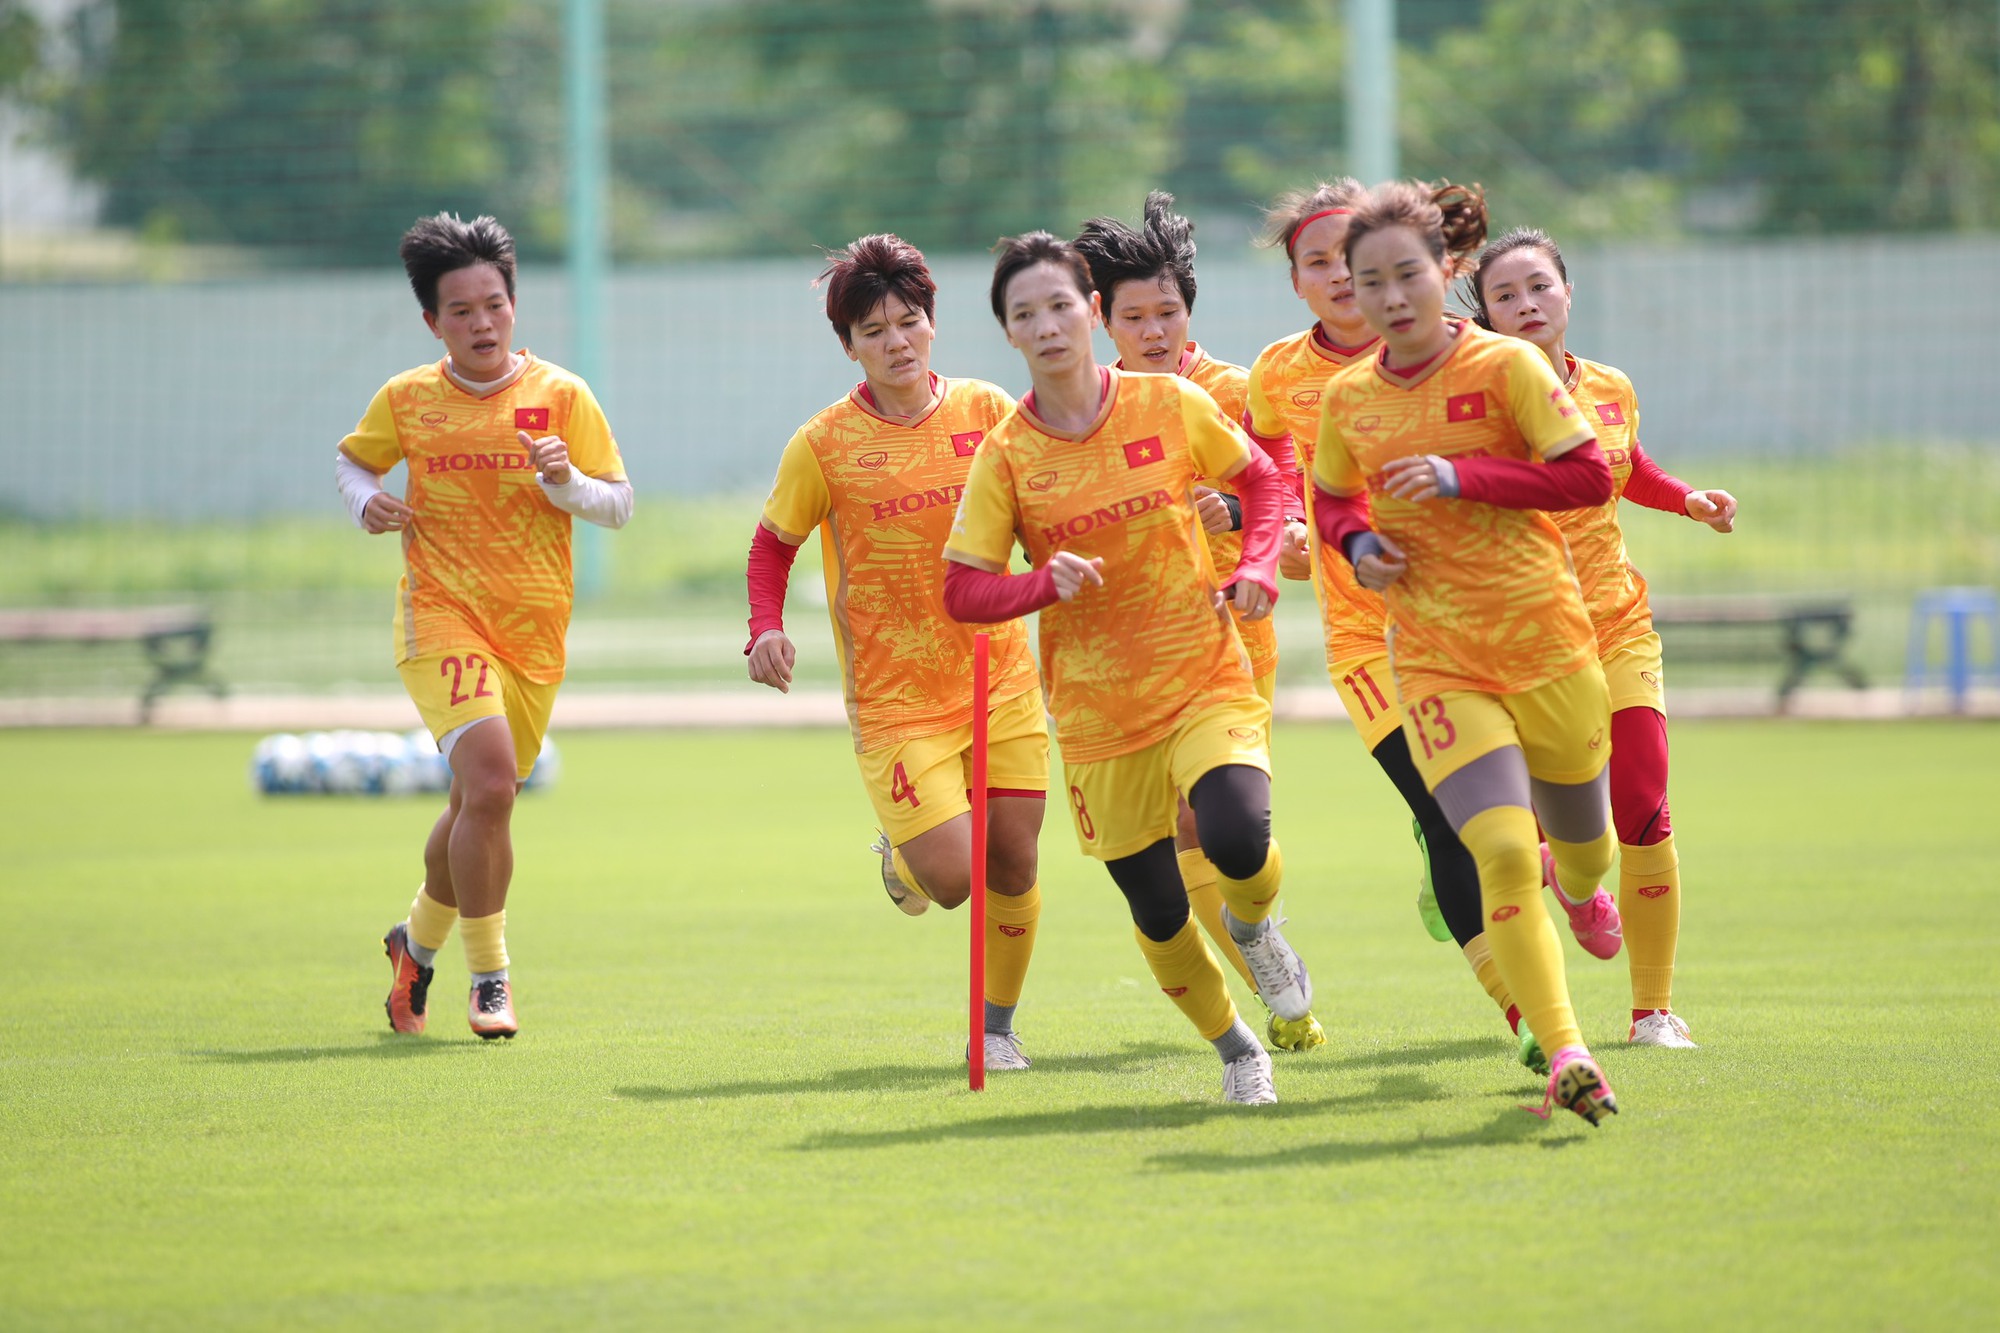 Thùy Trang (8) vẫn luôn là hình tượng thi đấu ý chí, tập luyện mẫu mực của giới bóng đá nữ